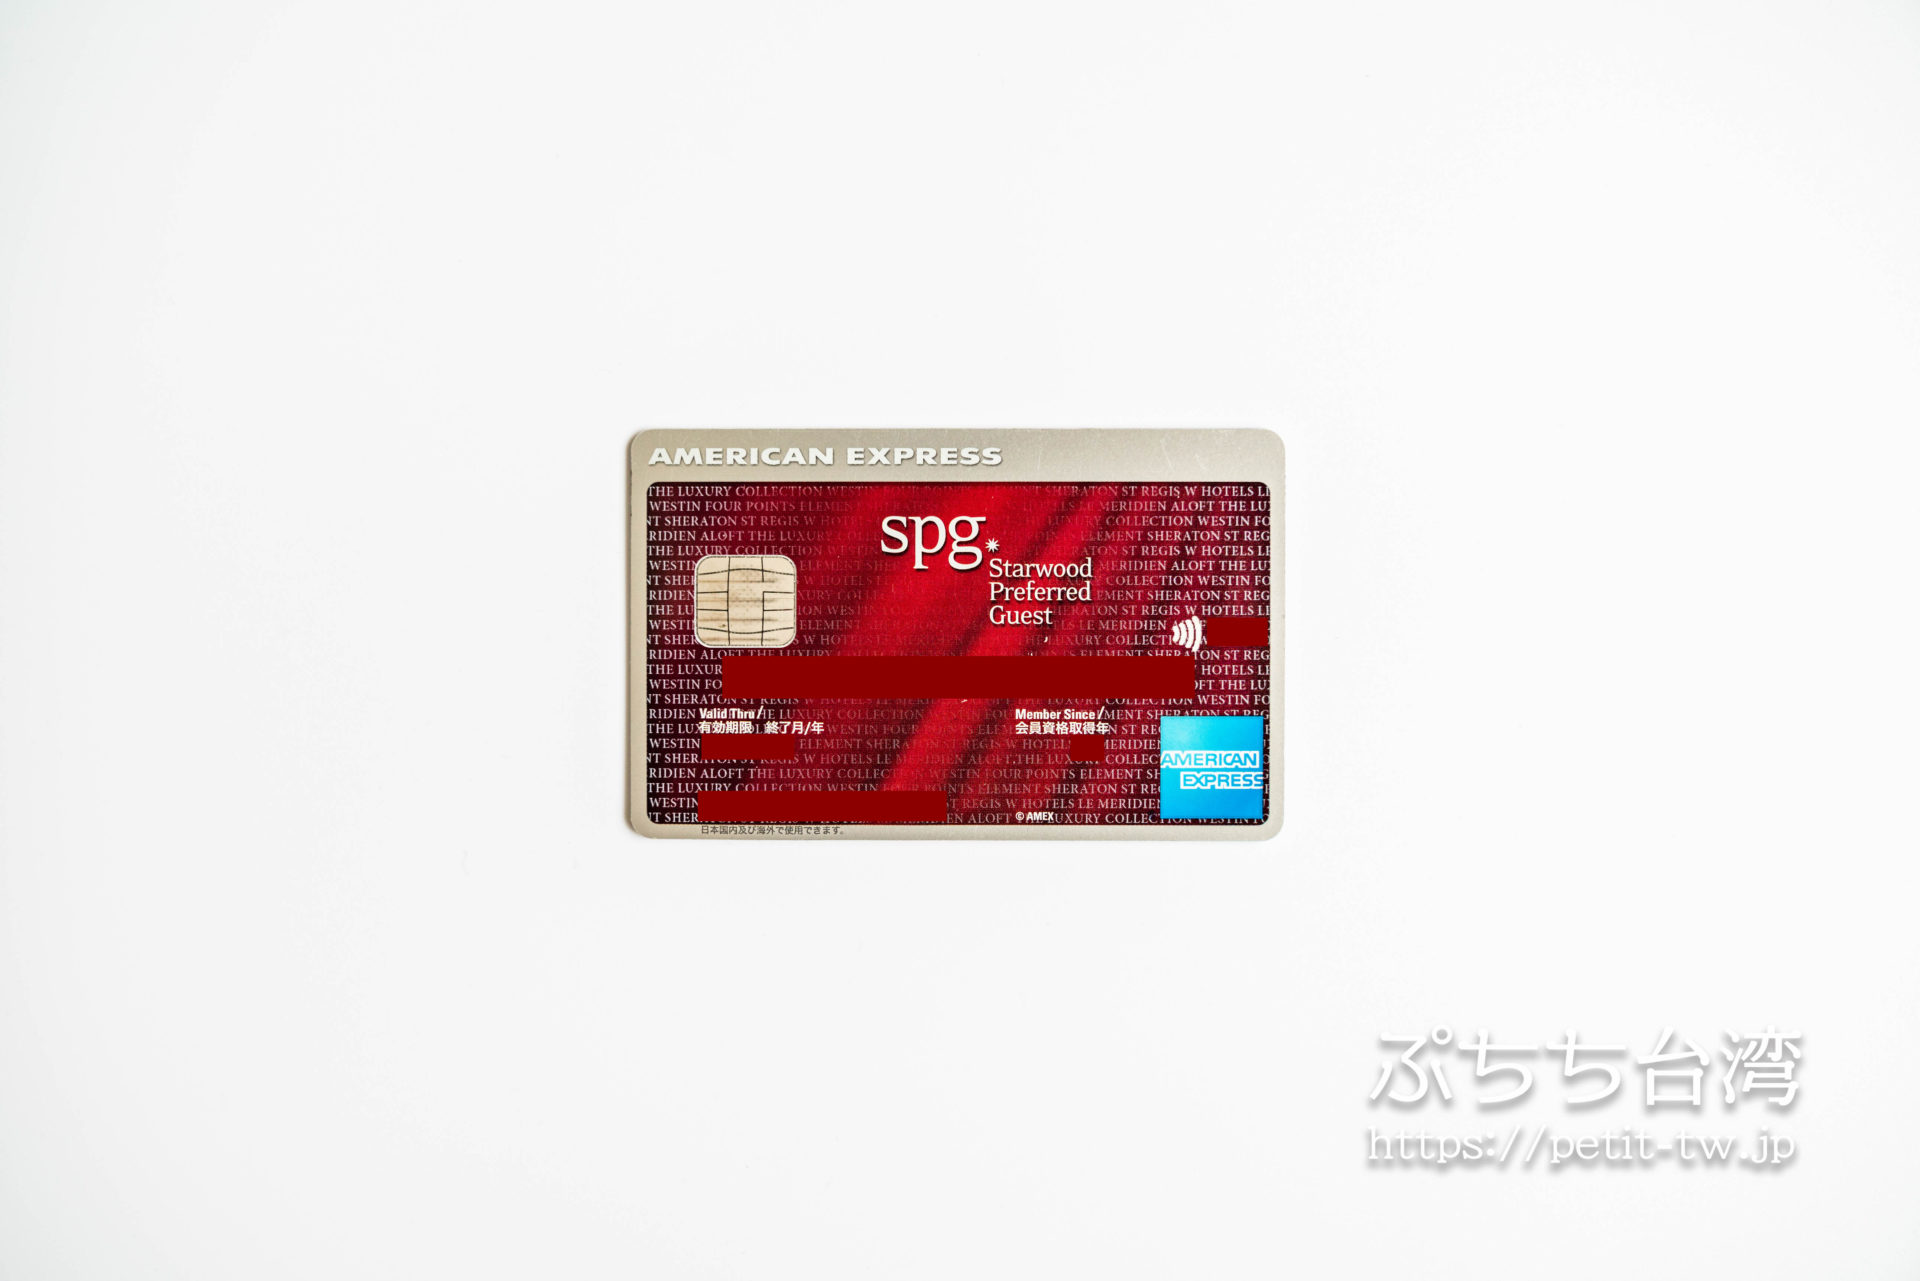 SPGアメックスカード 海外旅行におすすめのクレジットカード vol.3